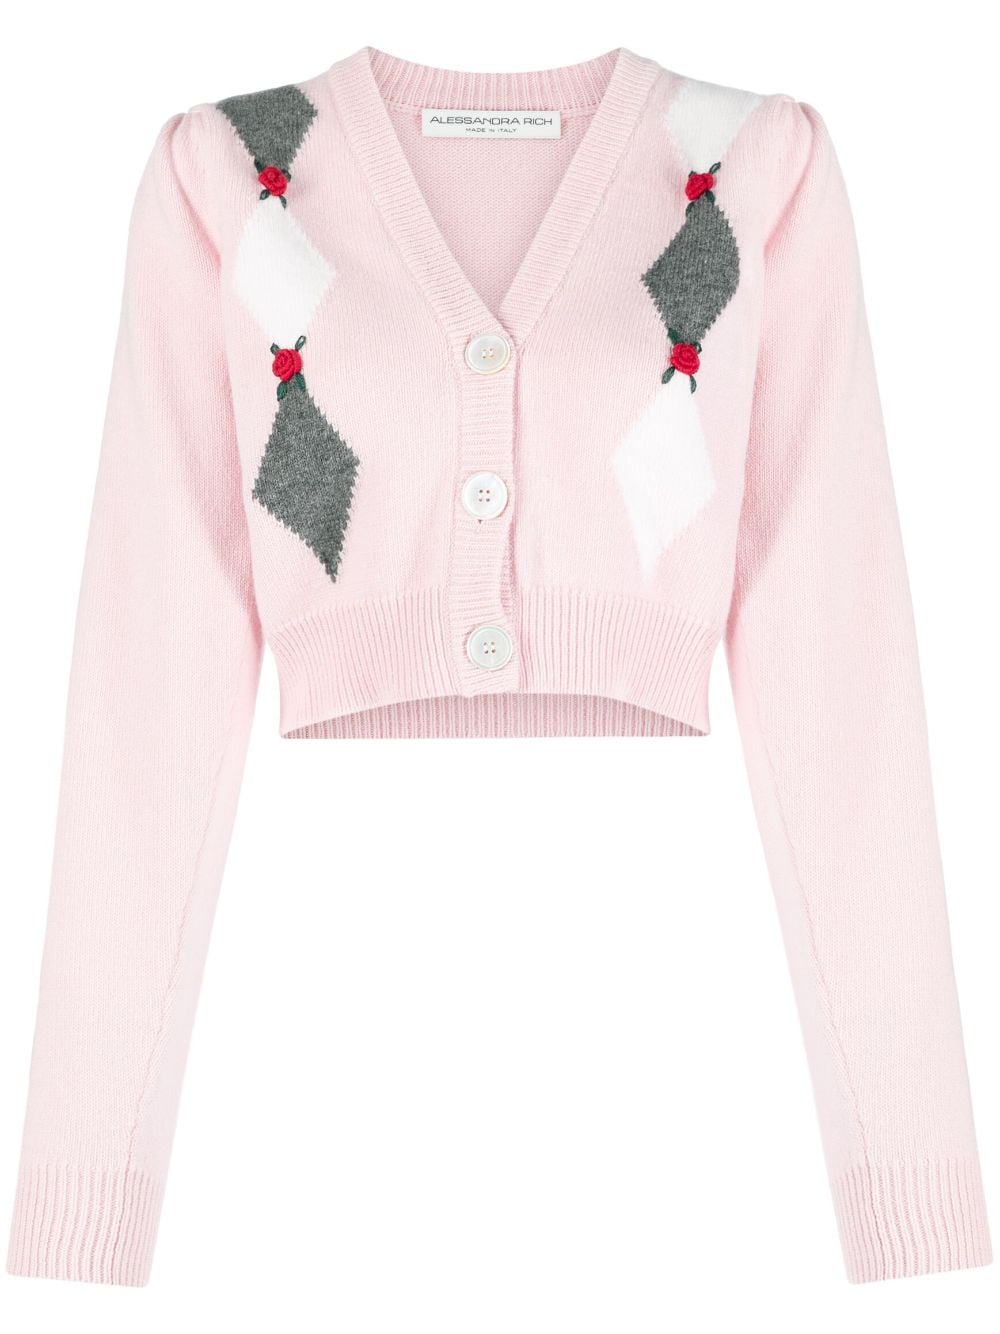 Alessandra Rich intarsia-knit floral-detail cardigan - Pink von Alessandra Rich